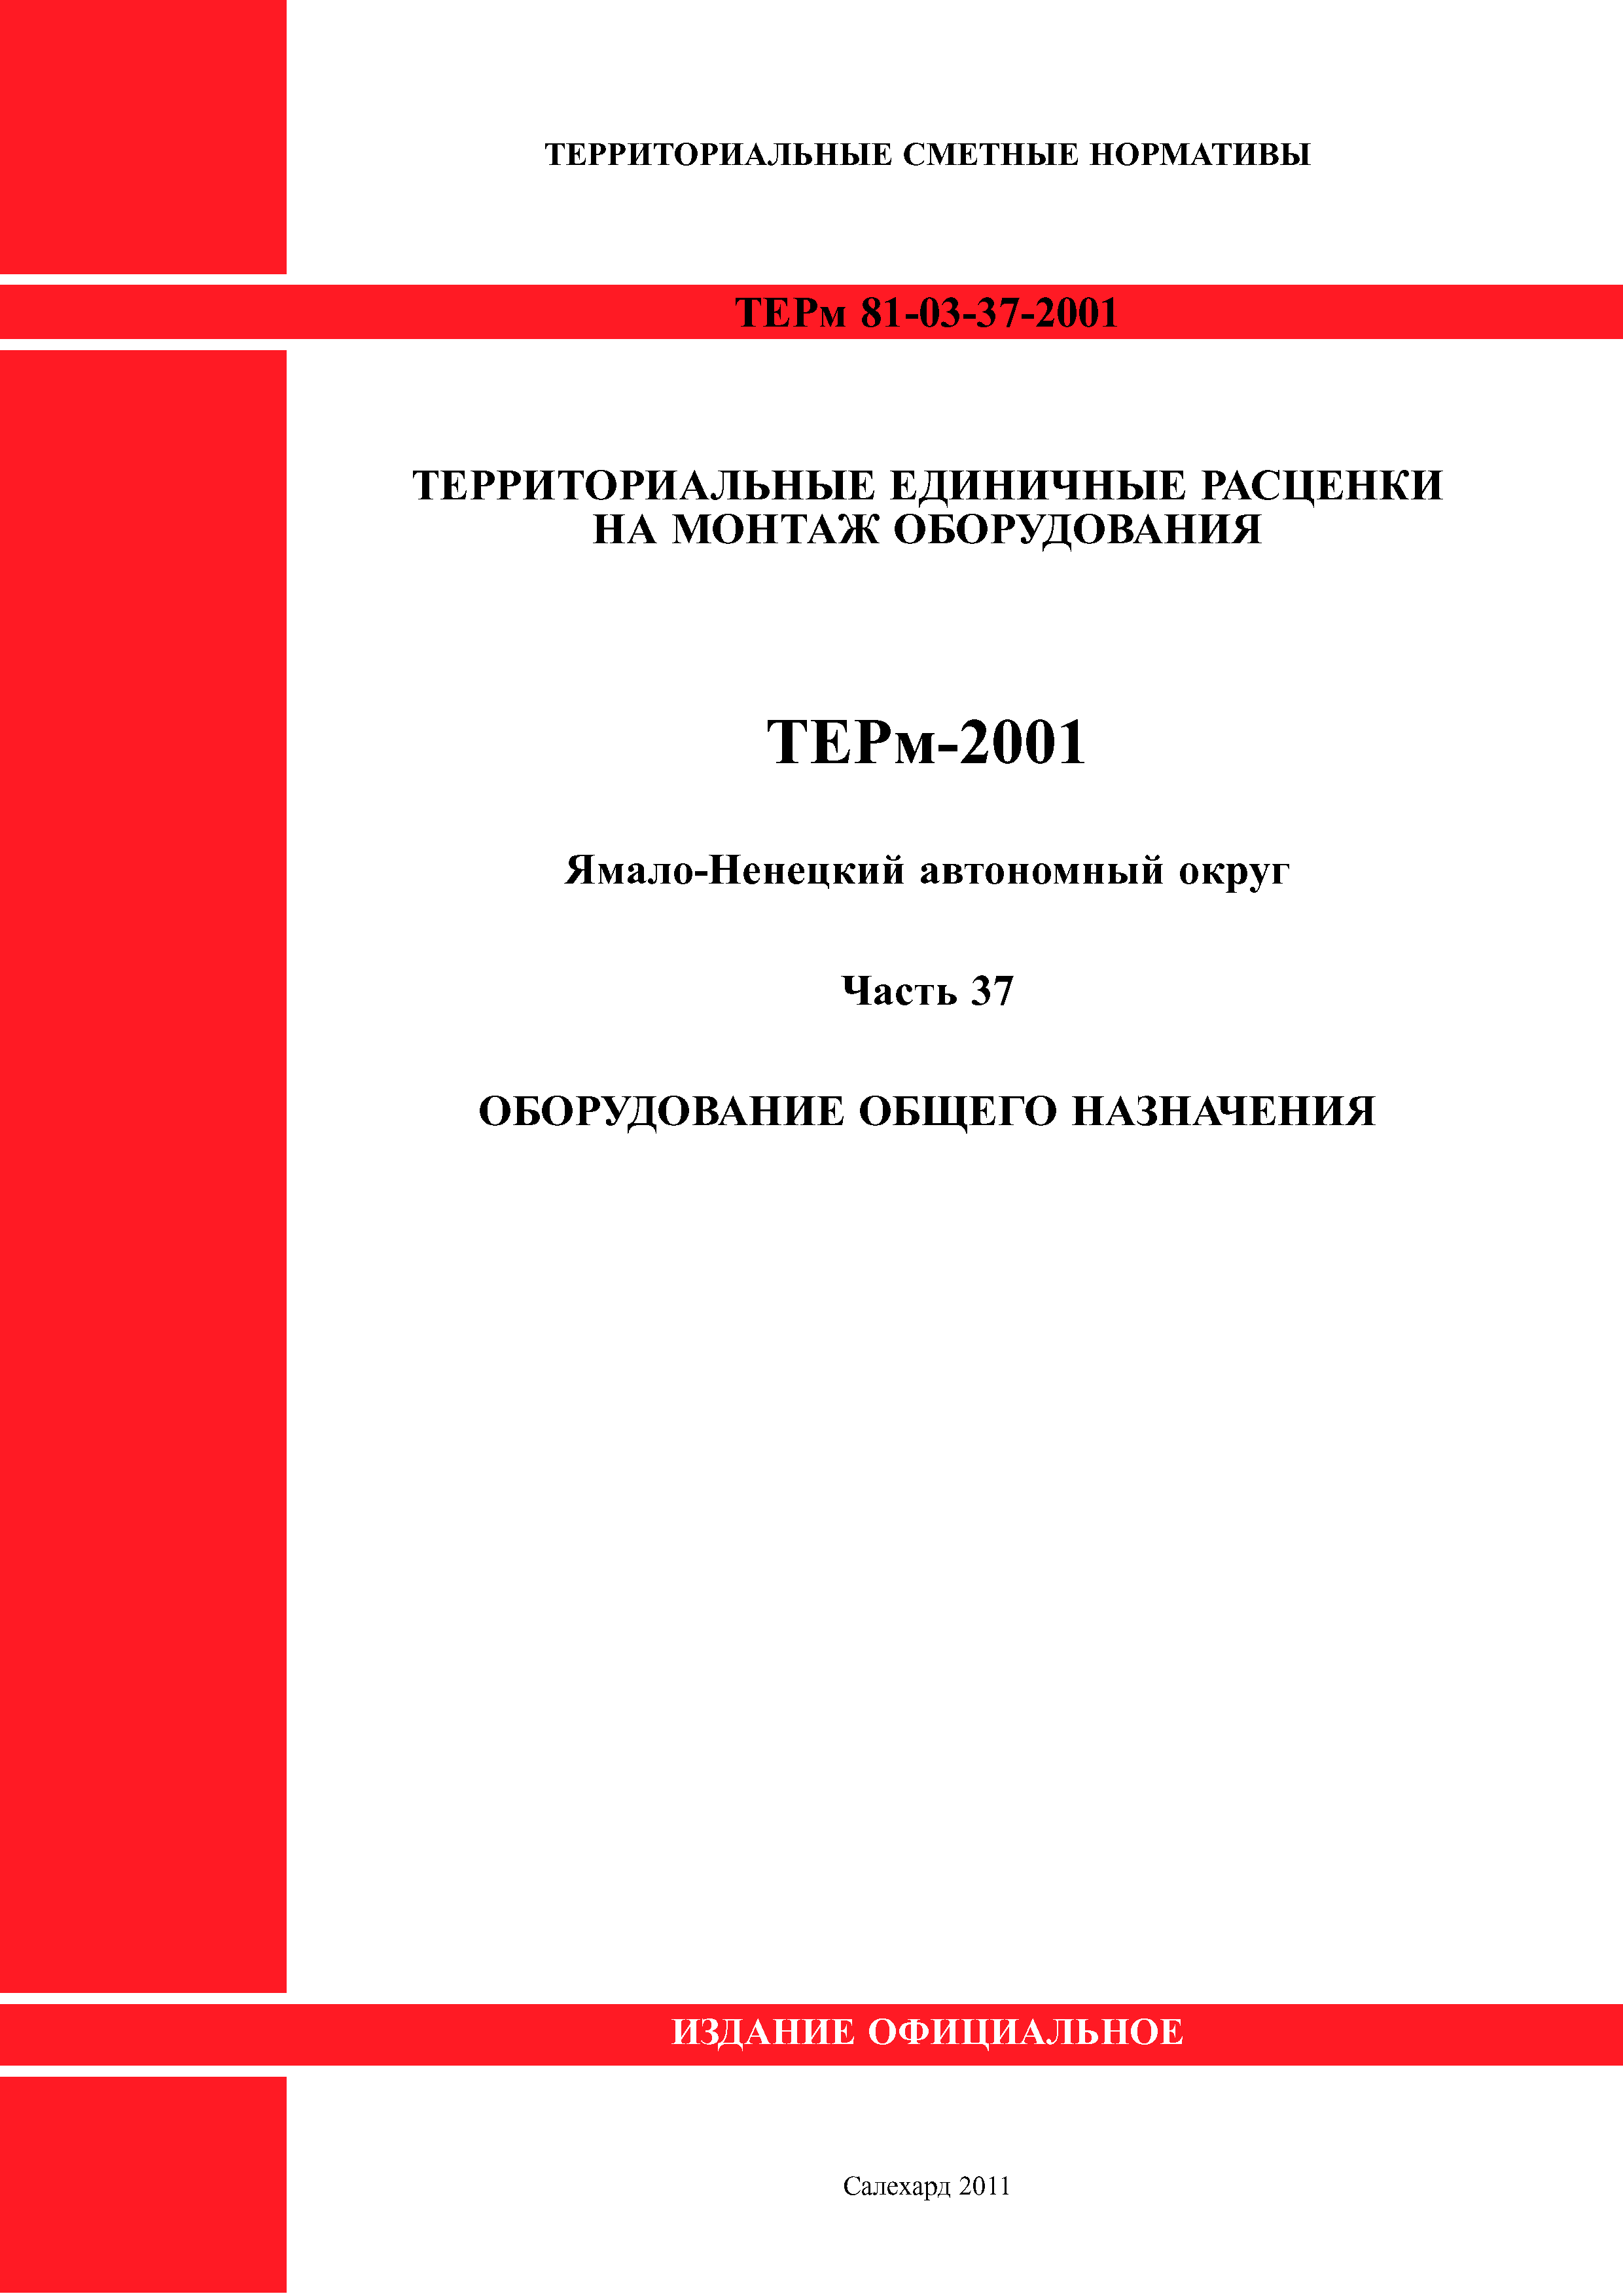 ТЕРм Ямало-Ненецкий автономный округ 37-2001